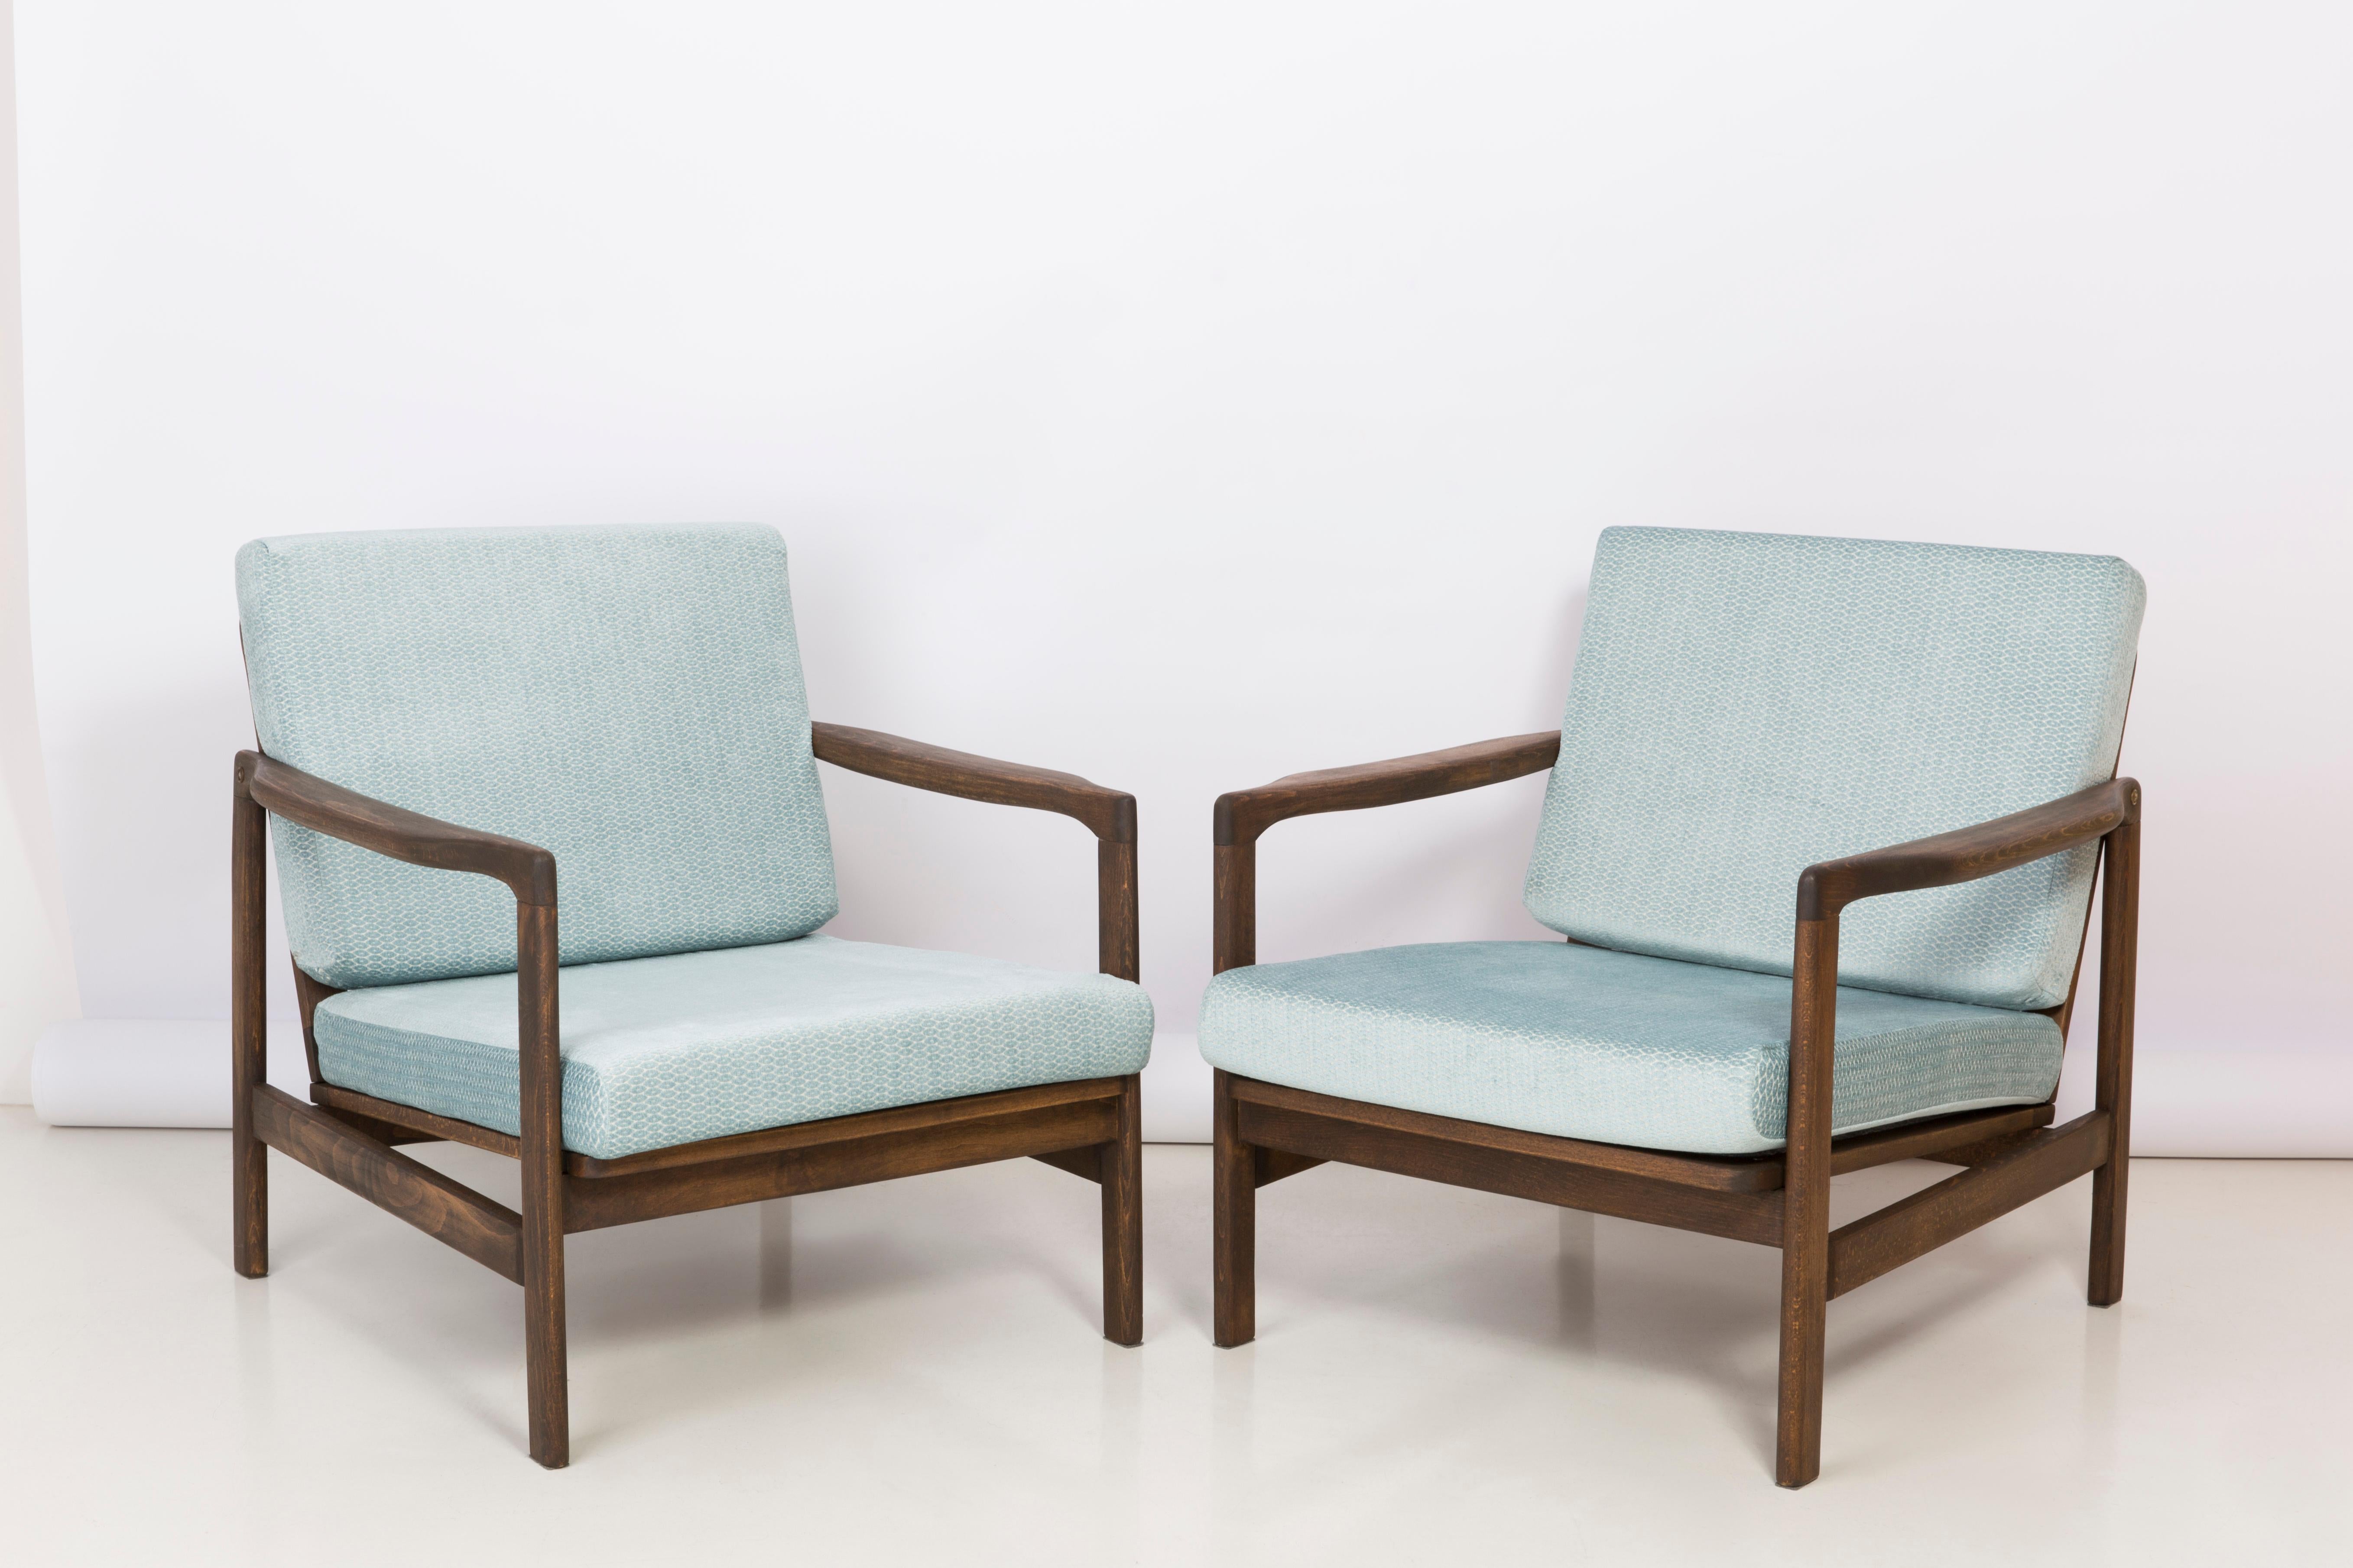 Der Sessel B-7522 wurde in den 1960er Jahren von Zenon Baczyk entworfen und von den Swarzedz-Möbelfabriken in Polen hergestellt. Die Möbel sind in perfektem Zustand, nachdem sie vollständig gepolstert und renoviert wurden. Stabiler und sehr